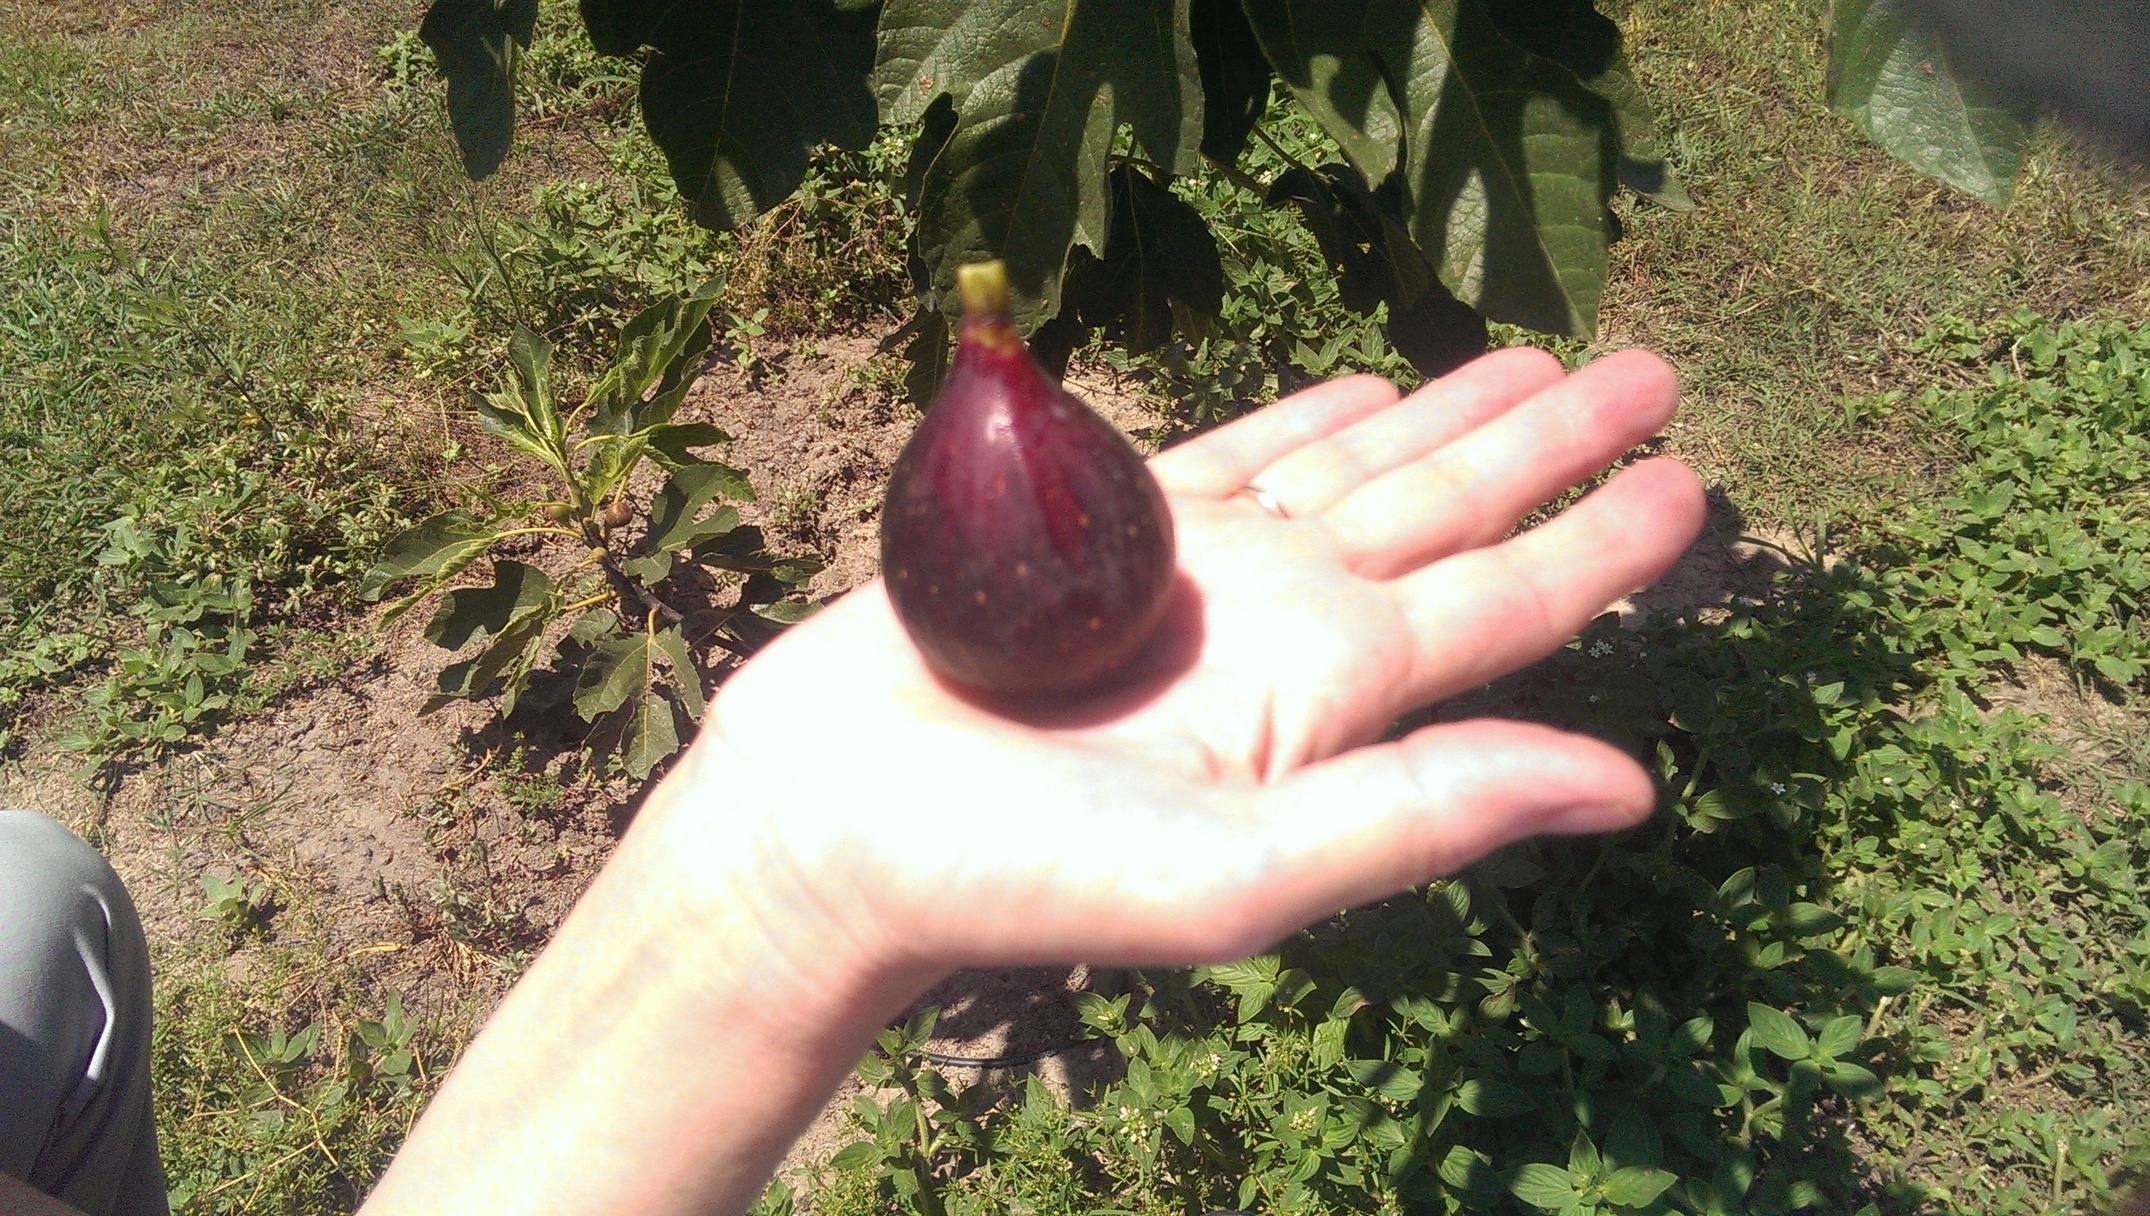 Violette de Bordeaux Fig - General Fruit Growing - Growing Fruit